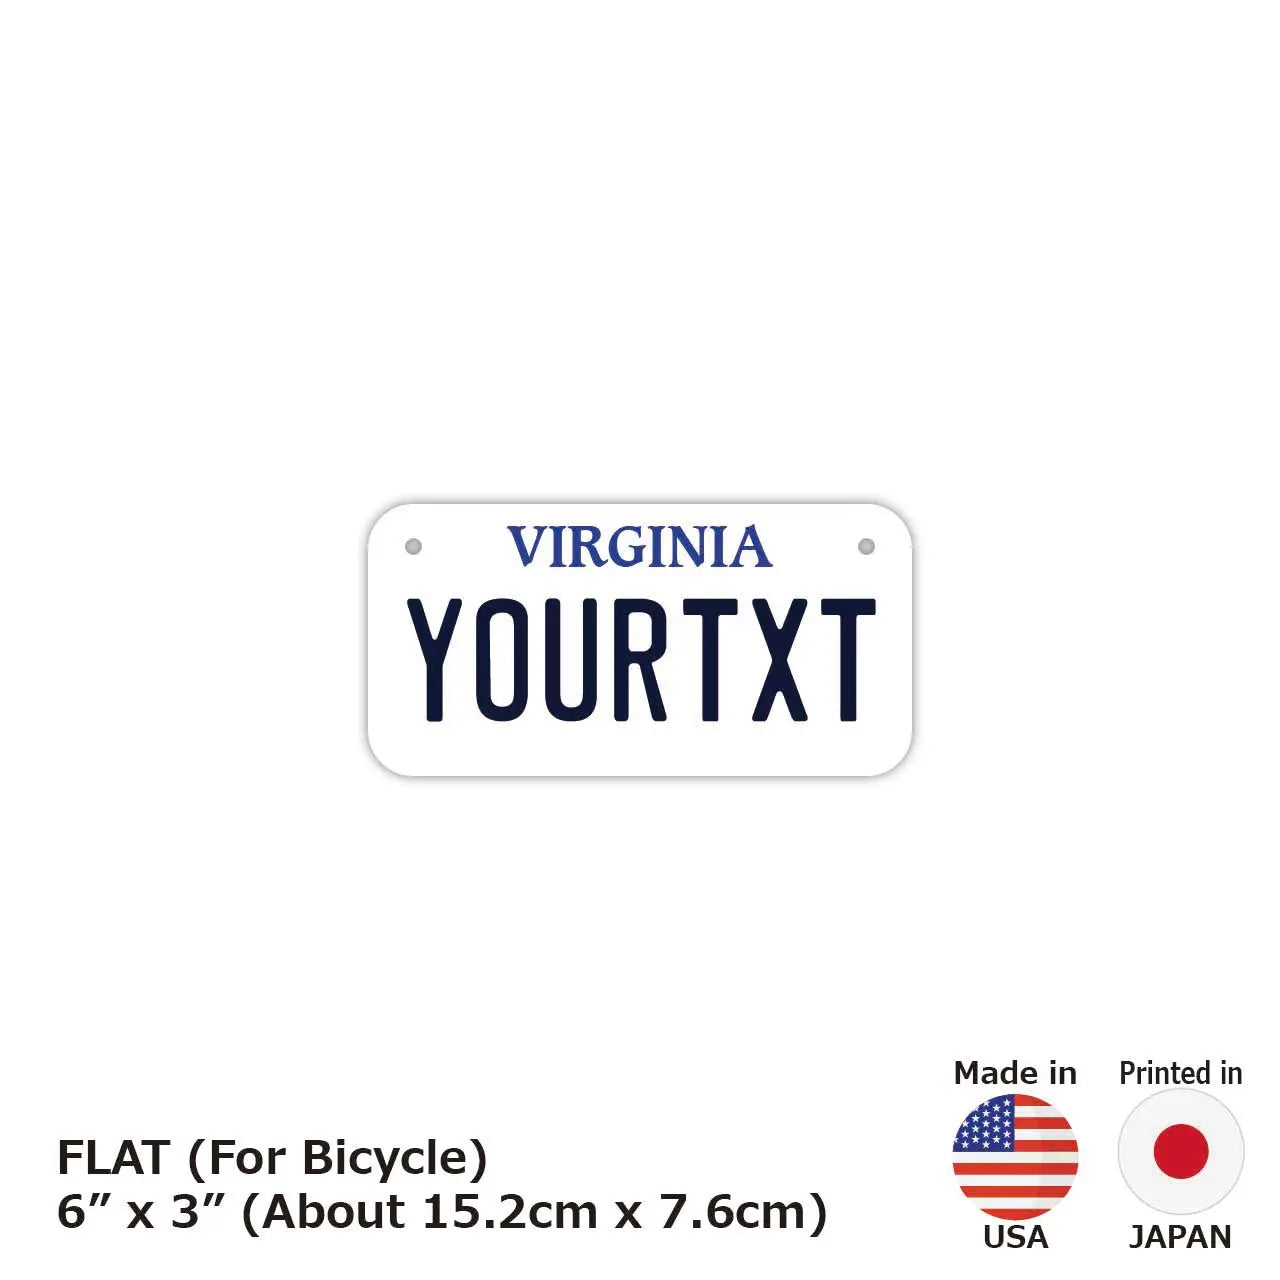 【小・自転車用】バージニア/オリジナルアメリカナンバープレート PL8HERO